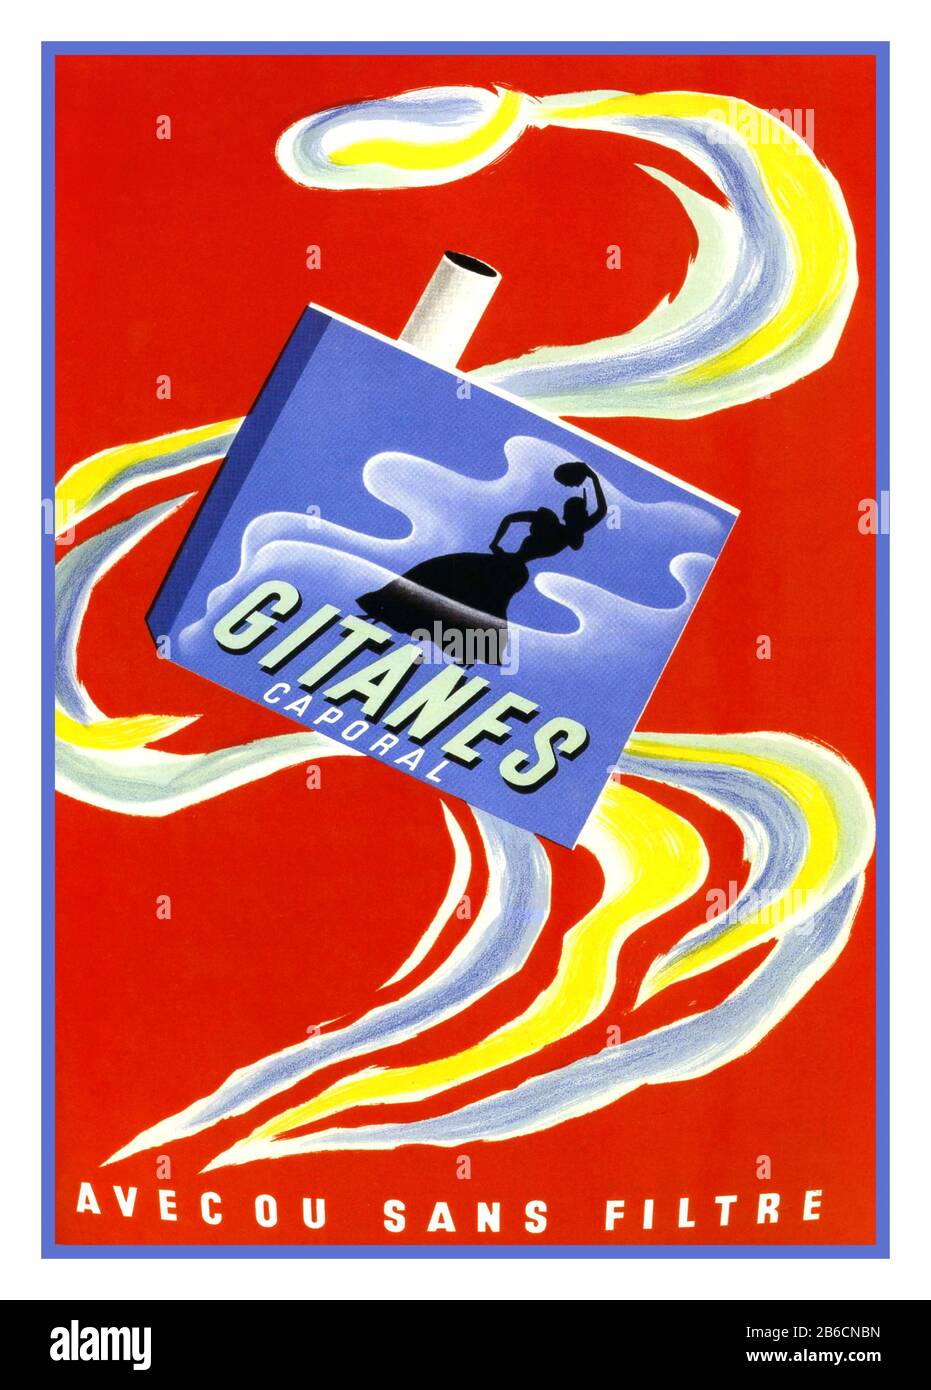 GITANES Vintage French Cigarette 1950 affiche Publicité pour Gitanes avec ou sans filtre artiste BERNARD VILLEMOT ART GRAPHIQUE RÉTRO DE HAUTE QUALITÉ VINTAGE GITANES AFFICHE PUBLICITAIRE Banque D'Images